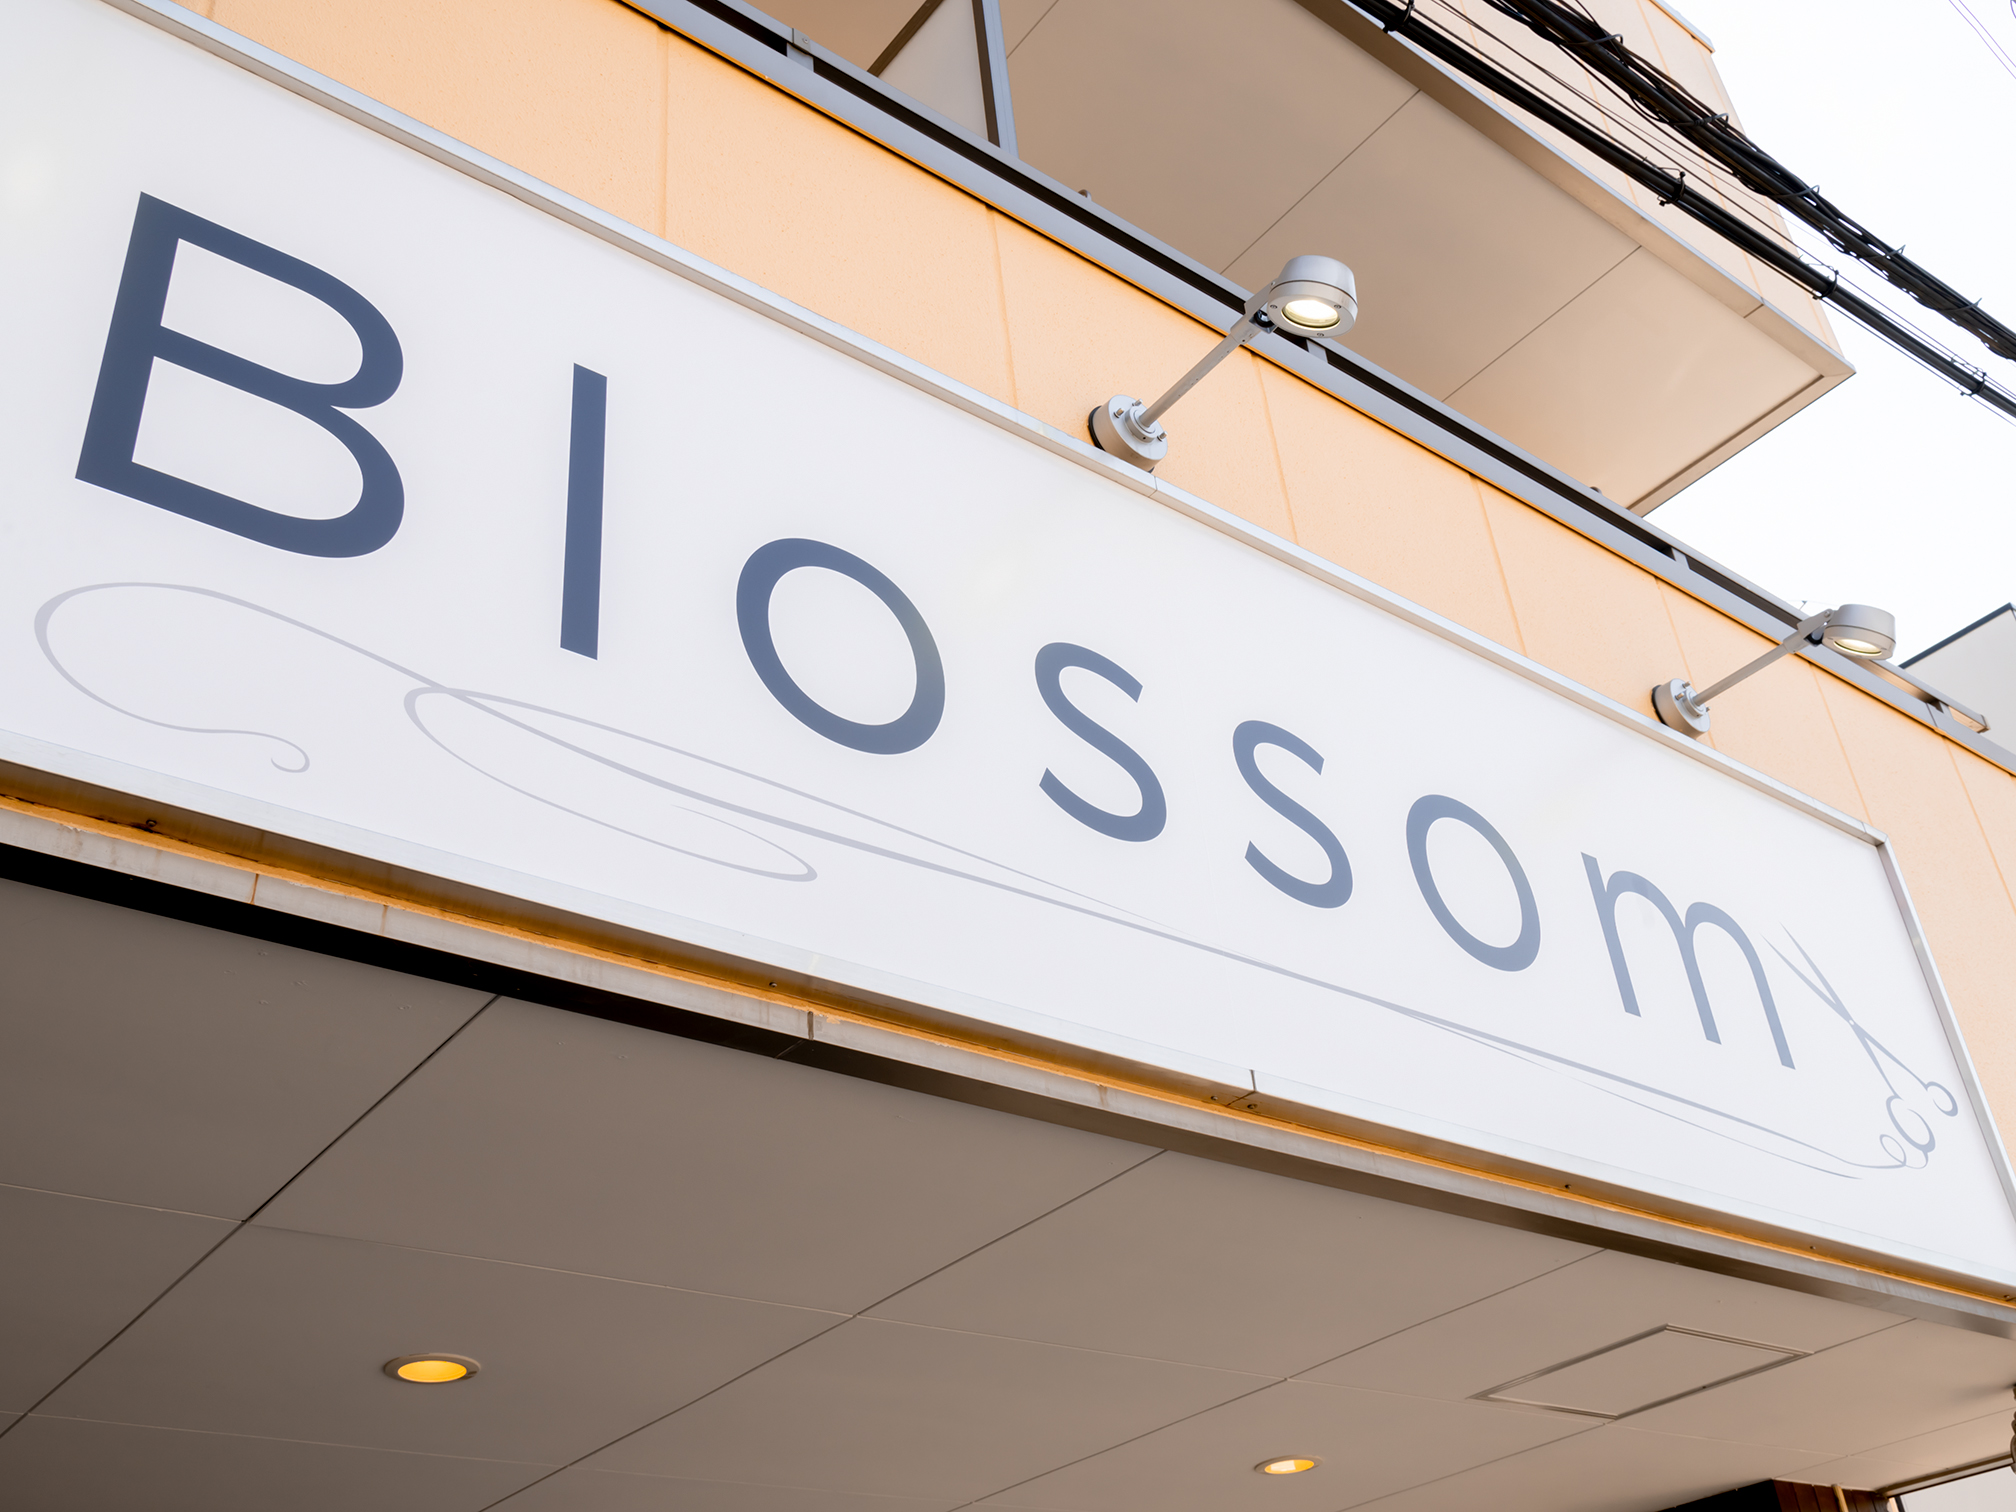 Blossom 鶴瀬店